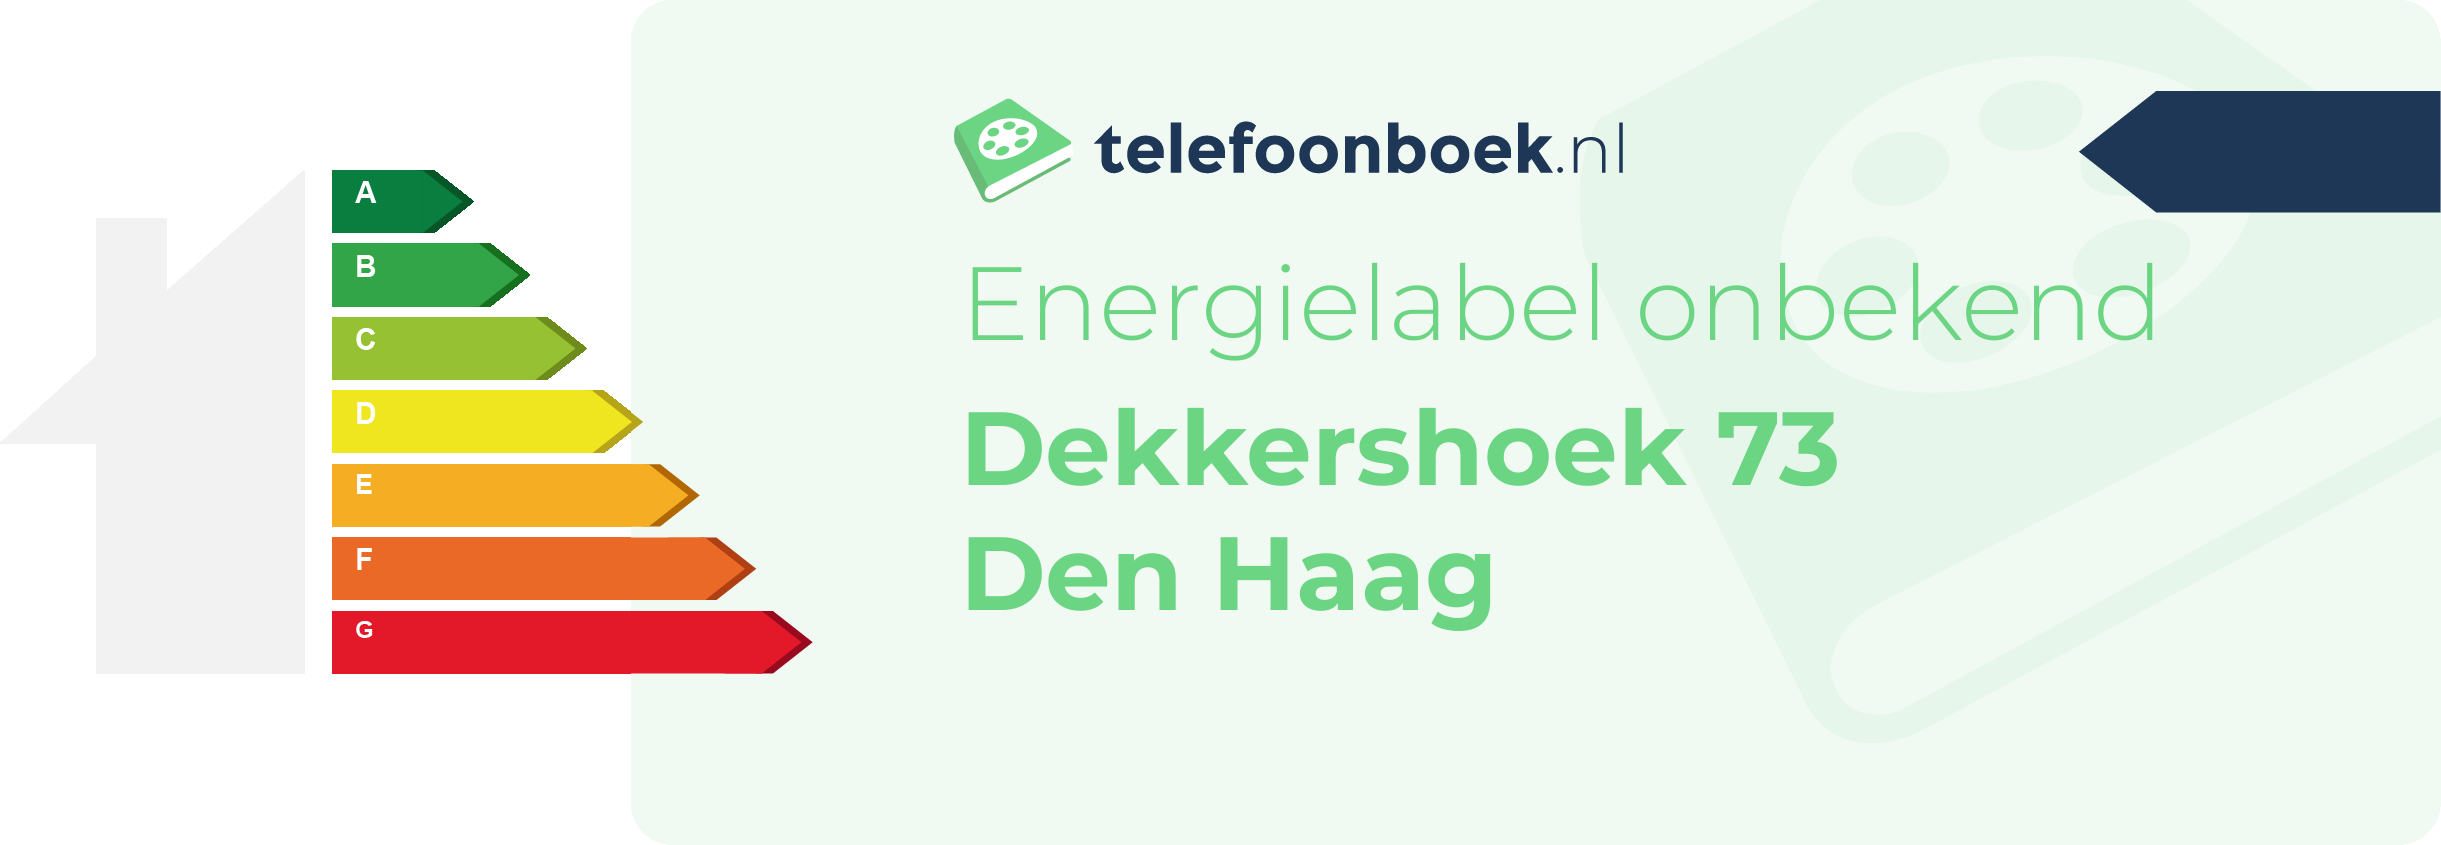 Energielabel Dekkershoek 73 Den Haag